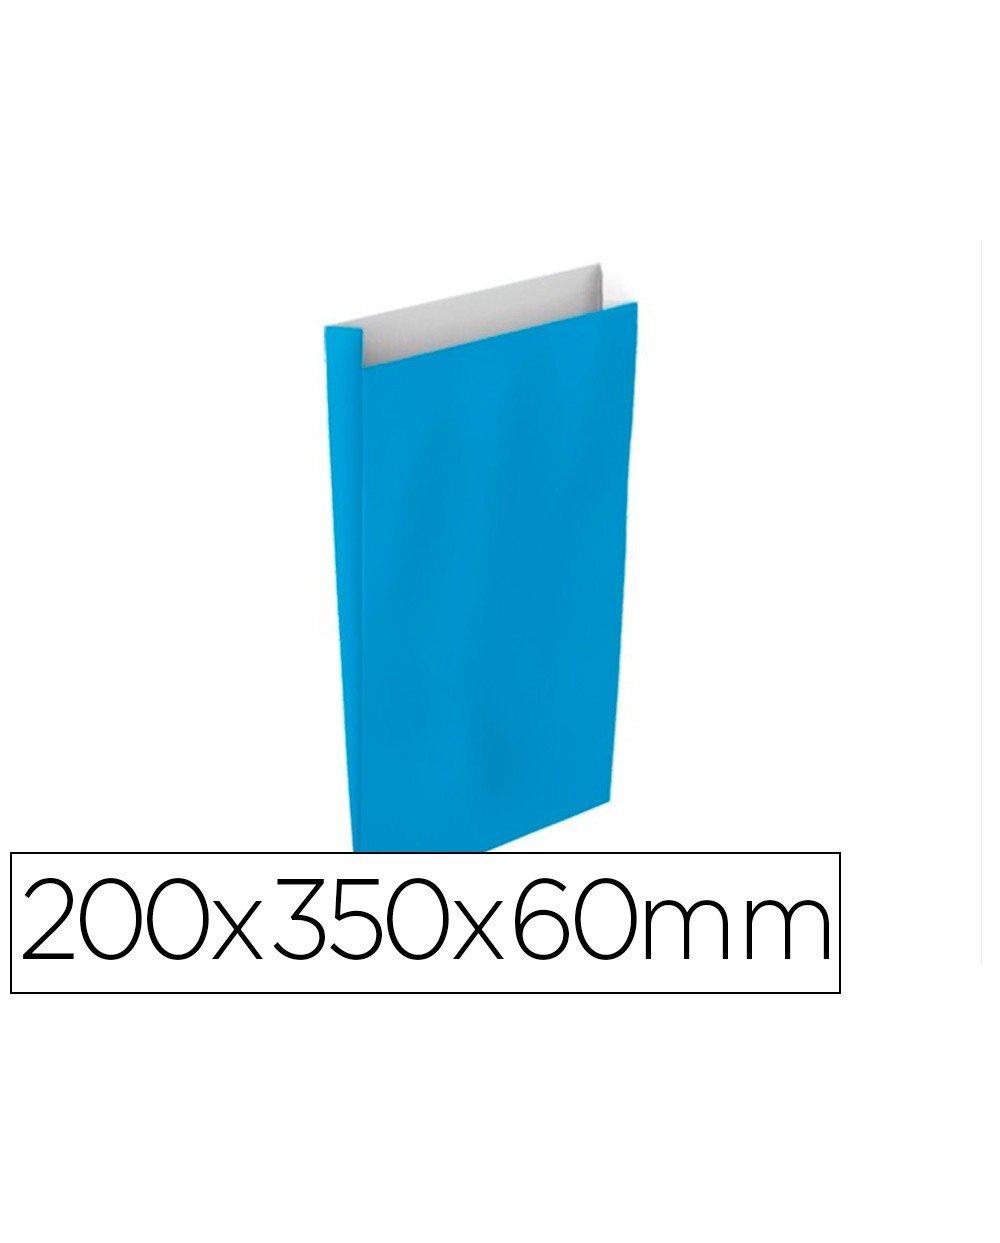 Sobre papel basika celulosa celeste con fuelle m 200x350x60 mm paquete de 25 unidades